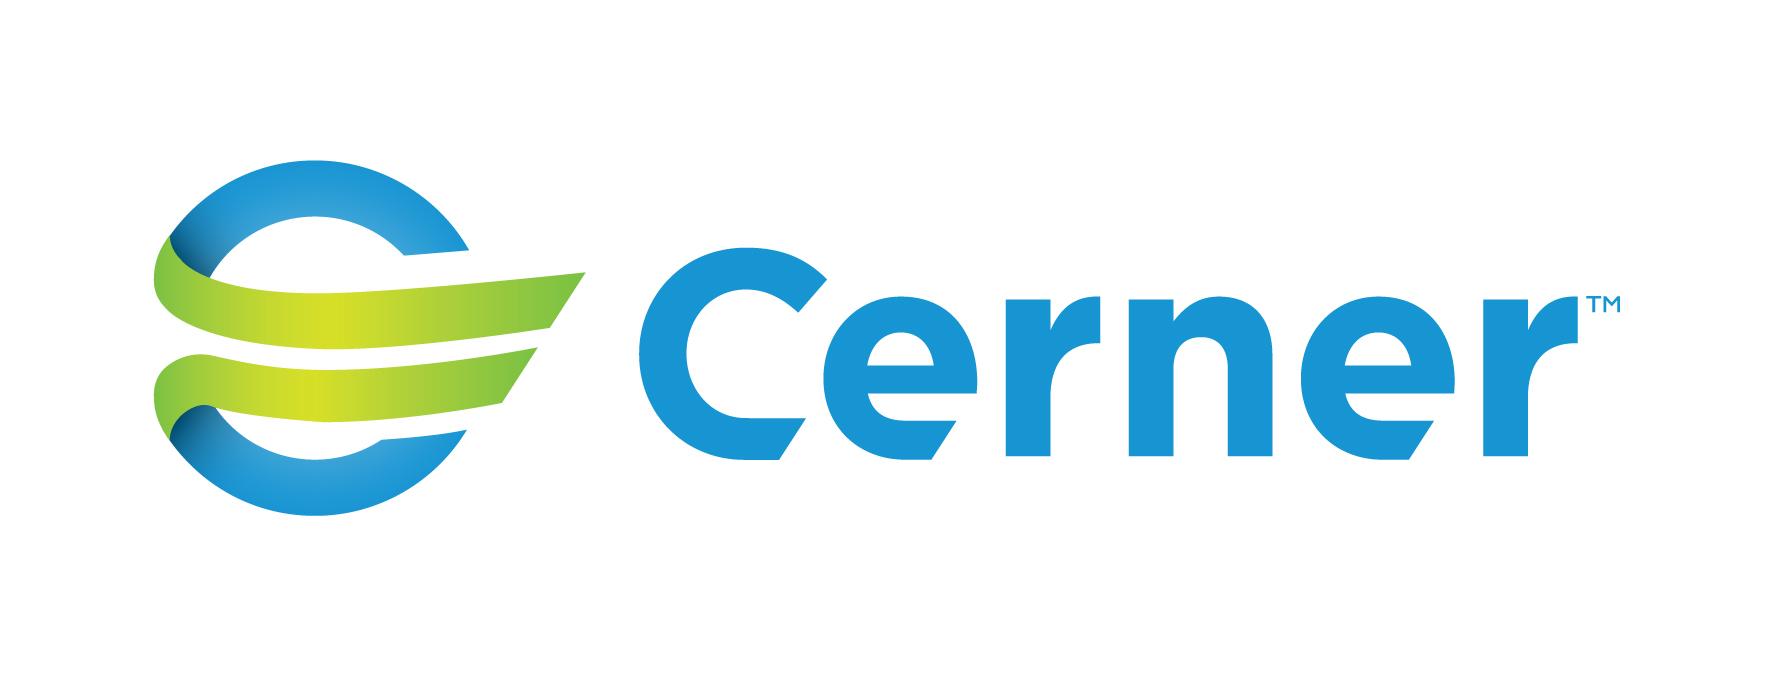 Cerner Logo - Cerner logo horizontal State Hospital Association